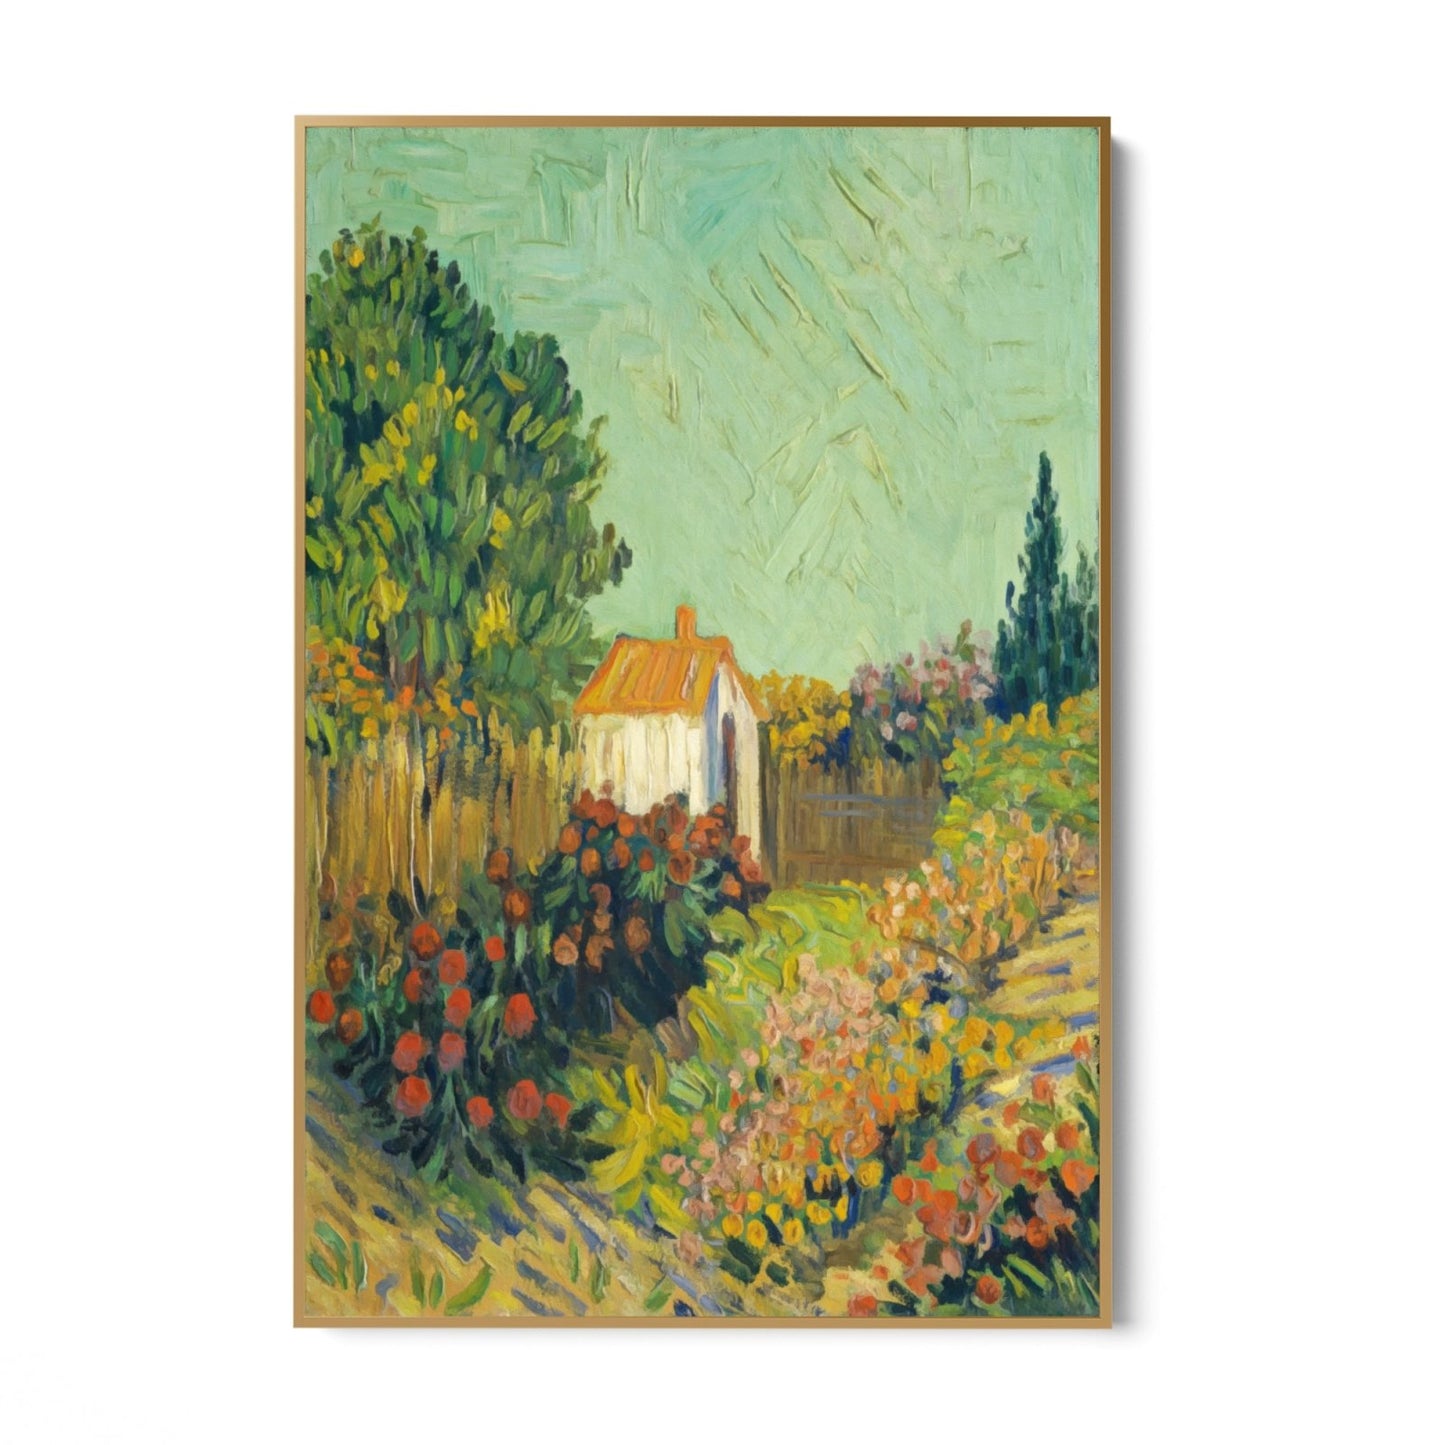 Tájkép 1925-1928, Vincent Van Gogh